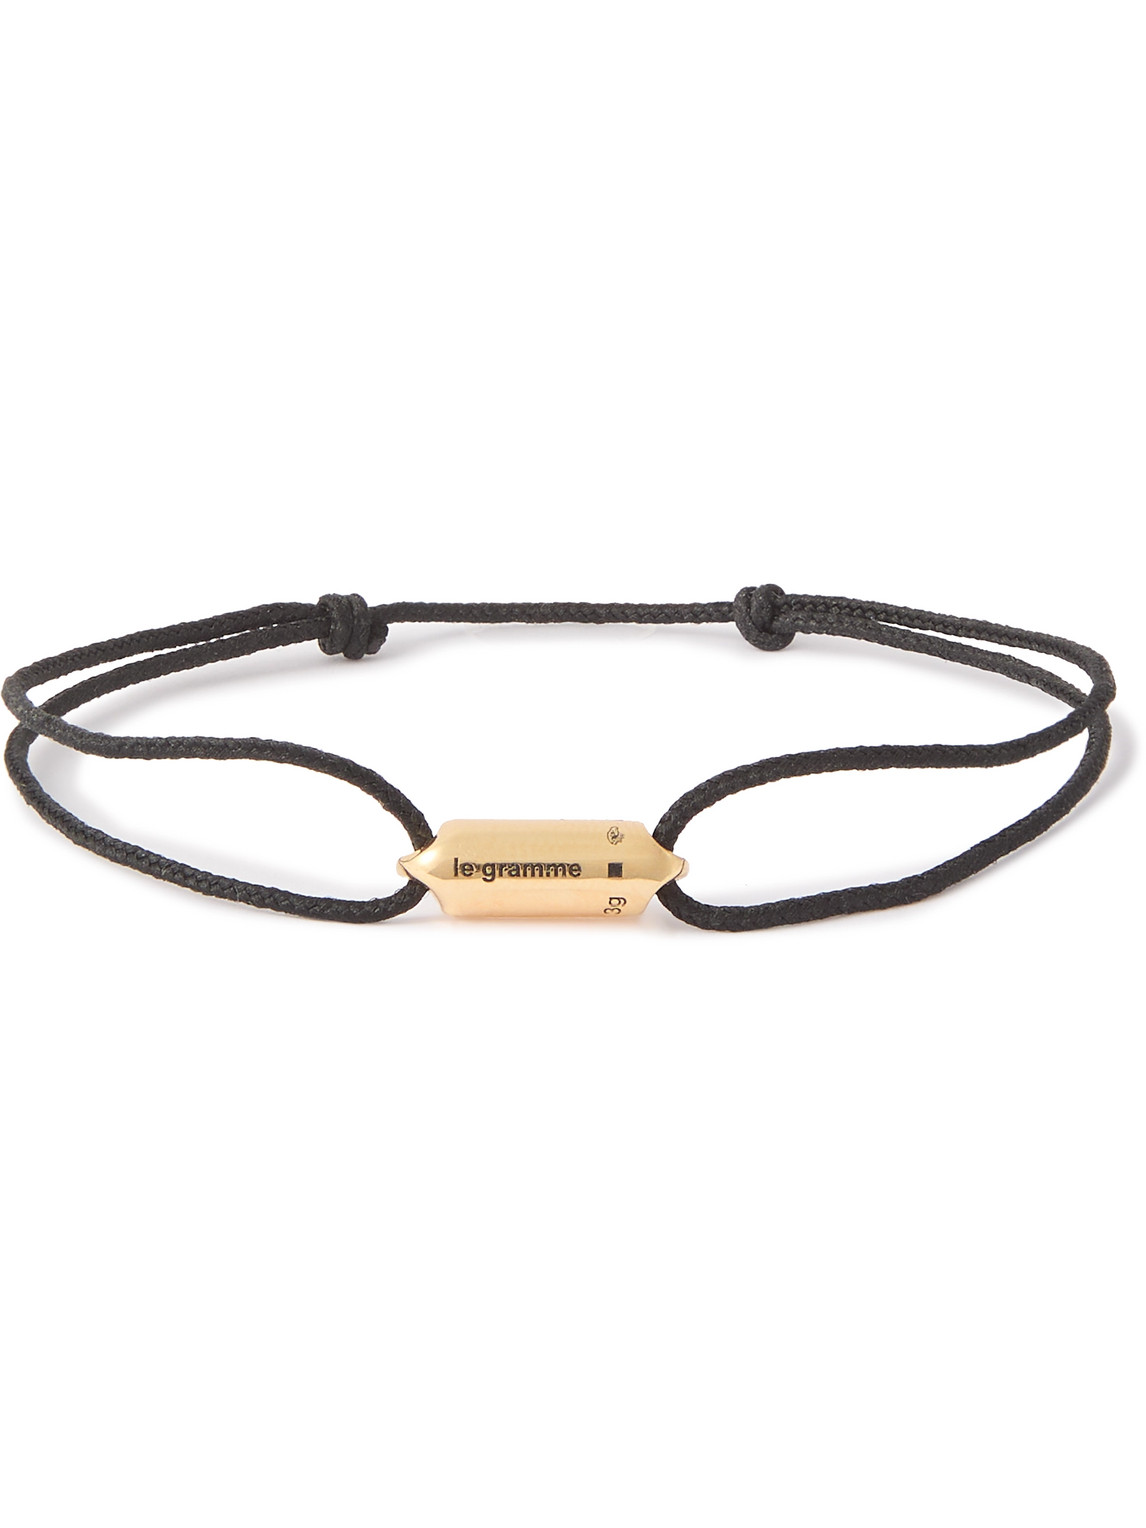 Le Gramme 3g Cord And 18-karat Gold Bracelet In Black